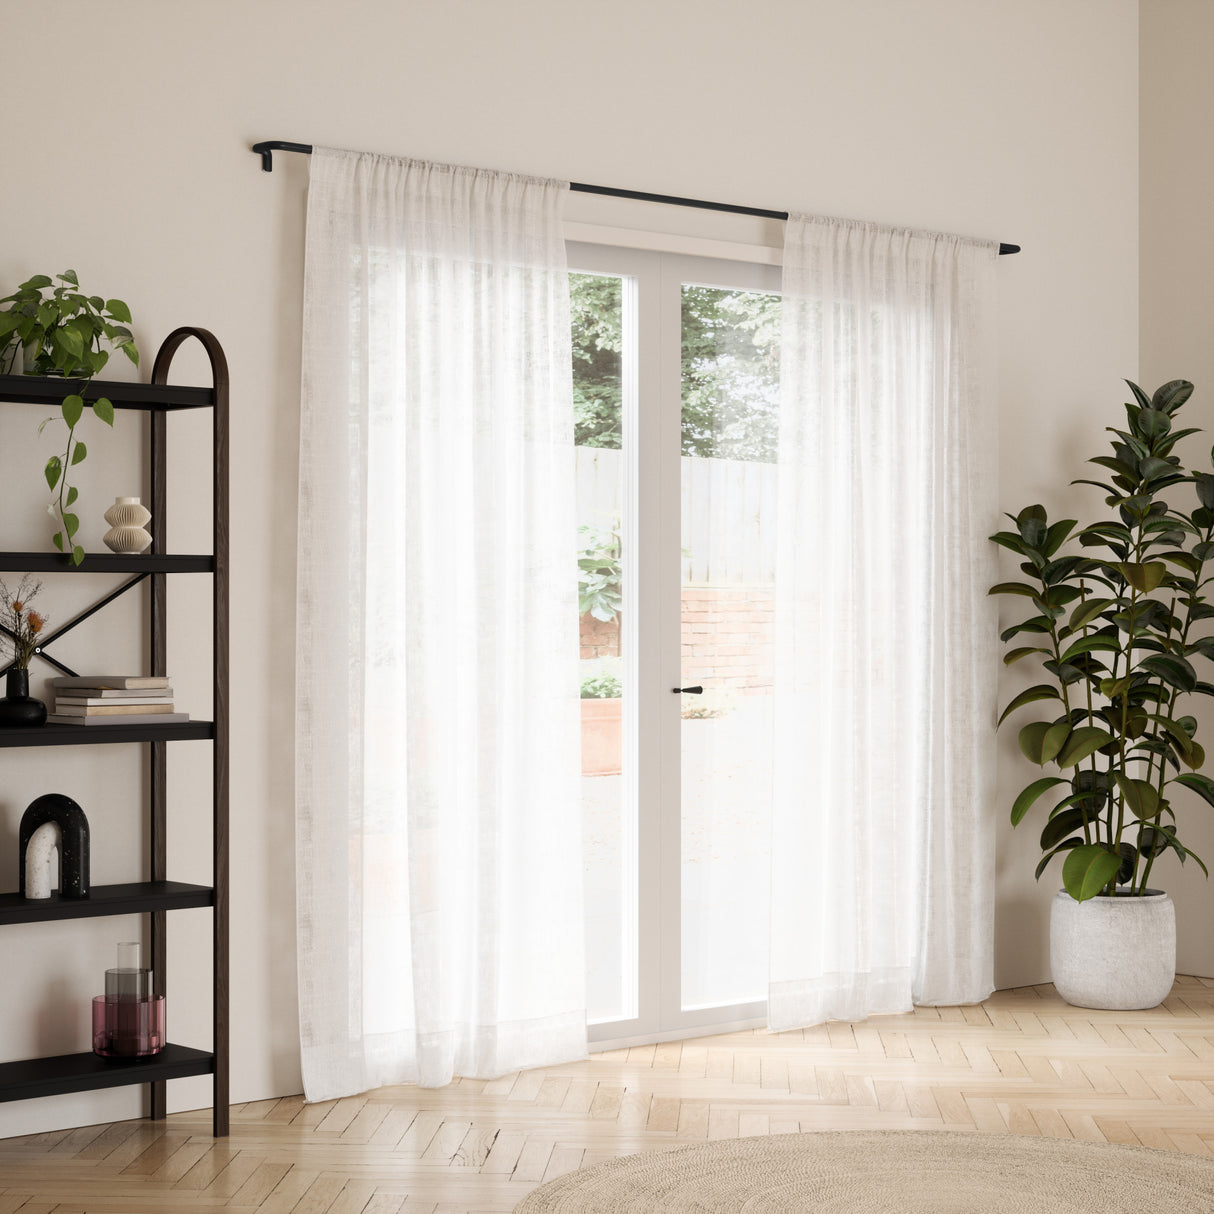 Single Curtain Rods | color: Matte-Black | size: 66-144" (167-365 cm) | diameter: 3/4" (1.9 cm)